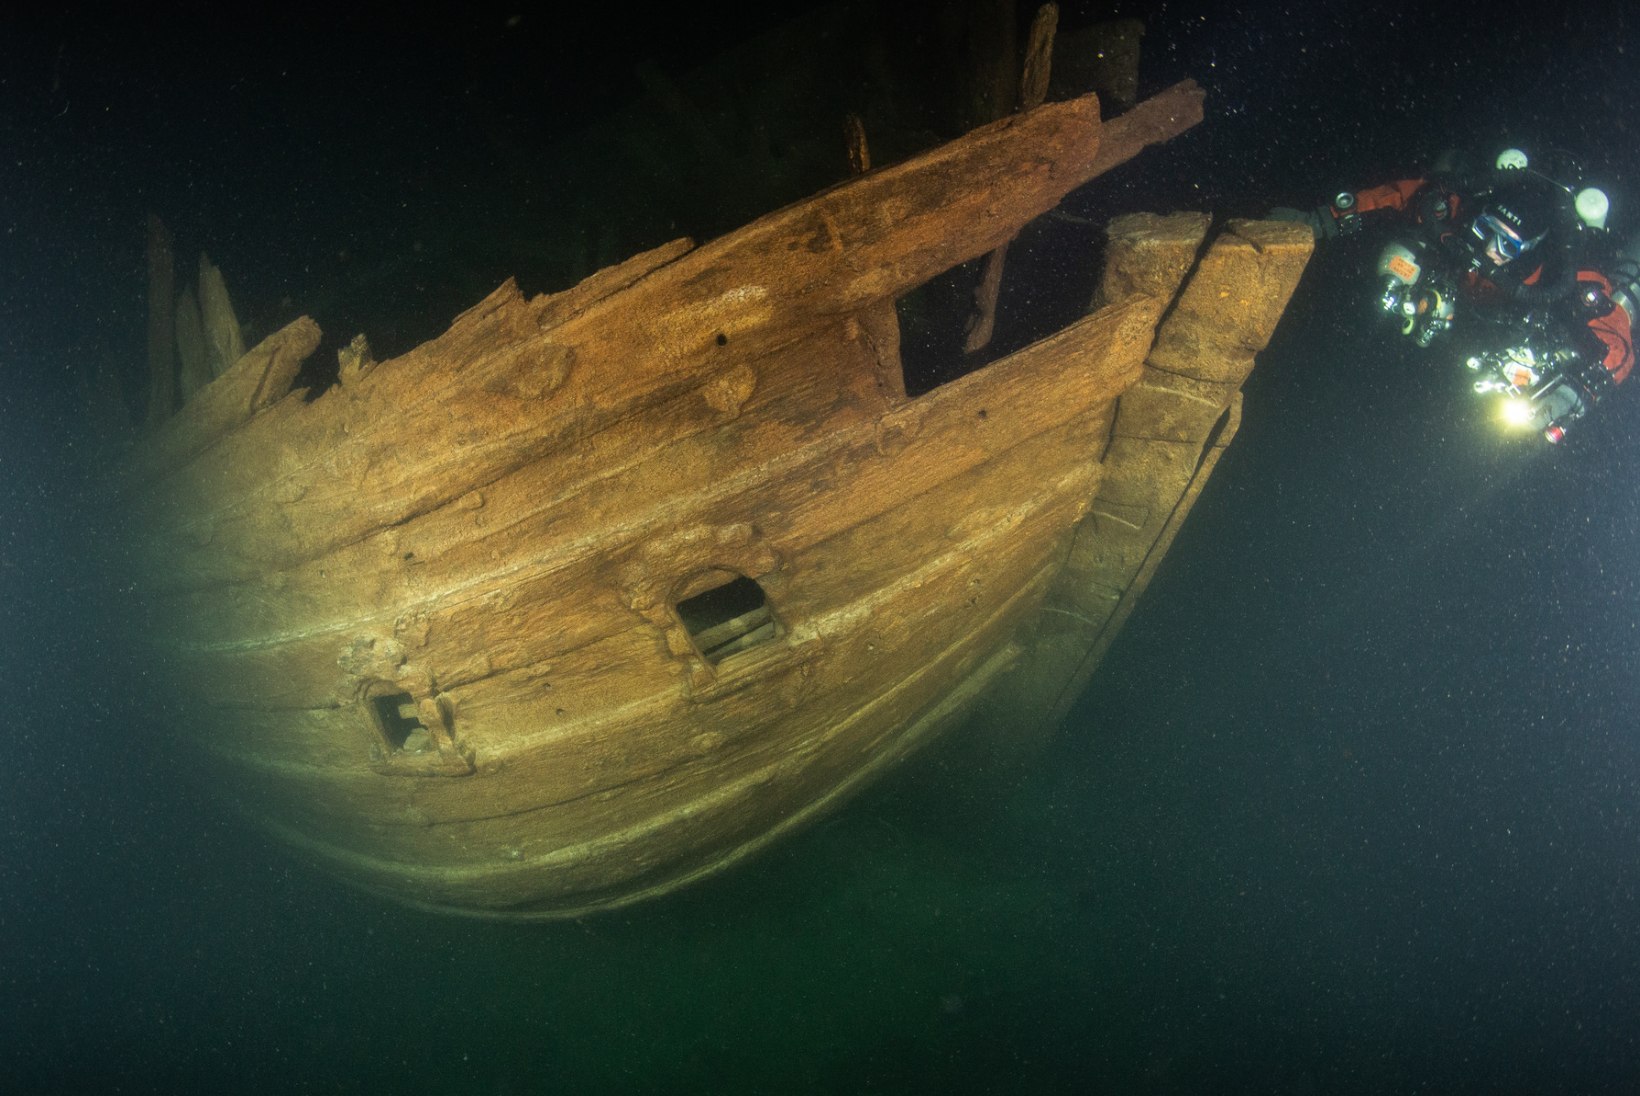 FOTOD JA VIDEO | HARULDANE LEID: Hiiumaa lähistelt leiti 400 aastat vana laevavrakk